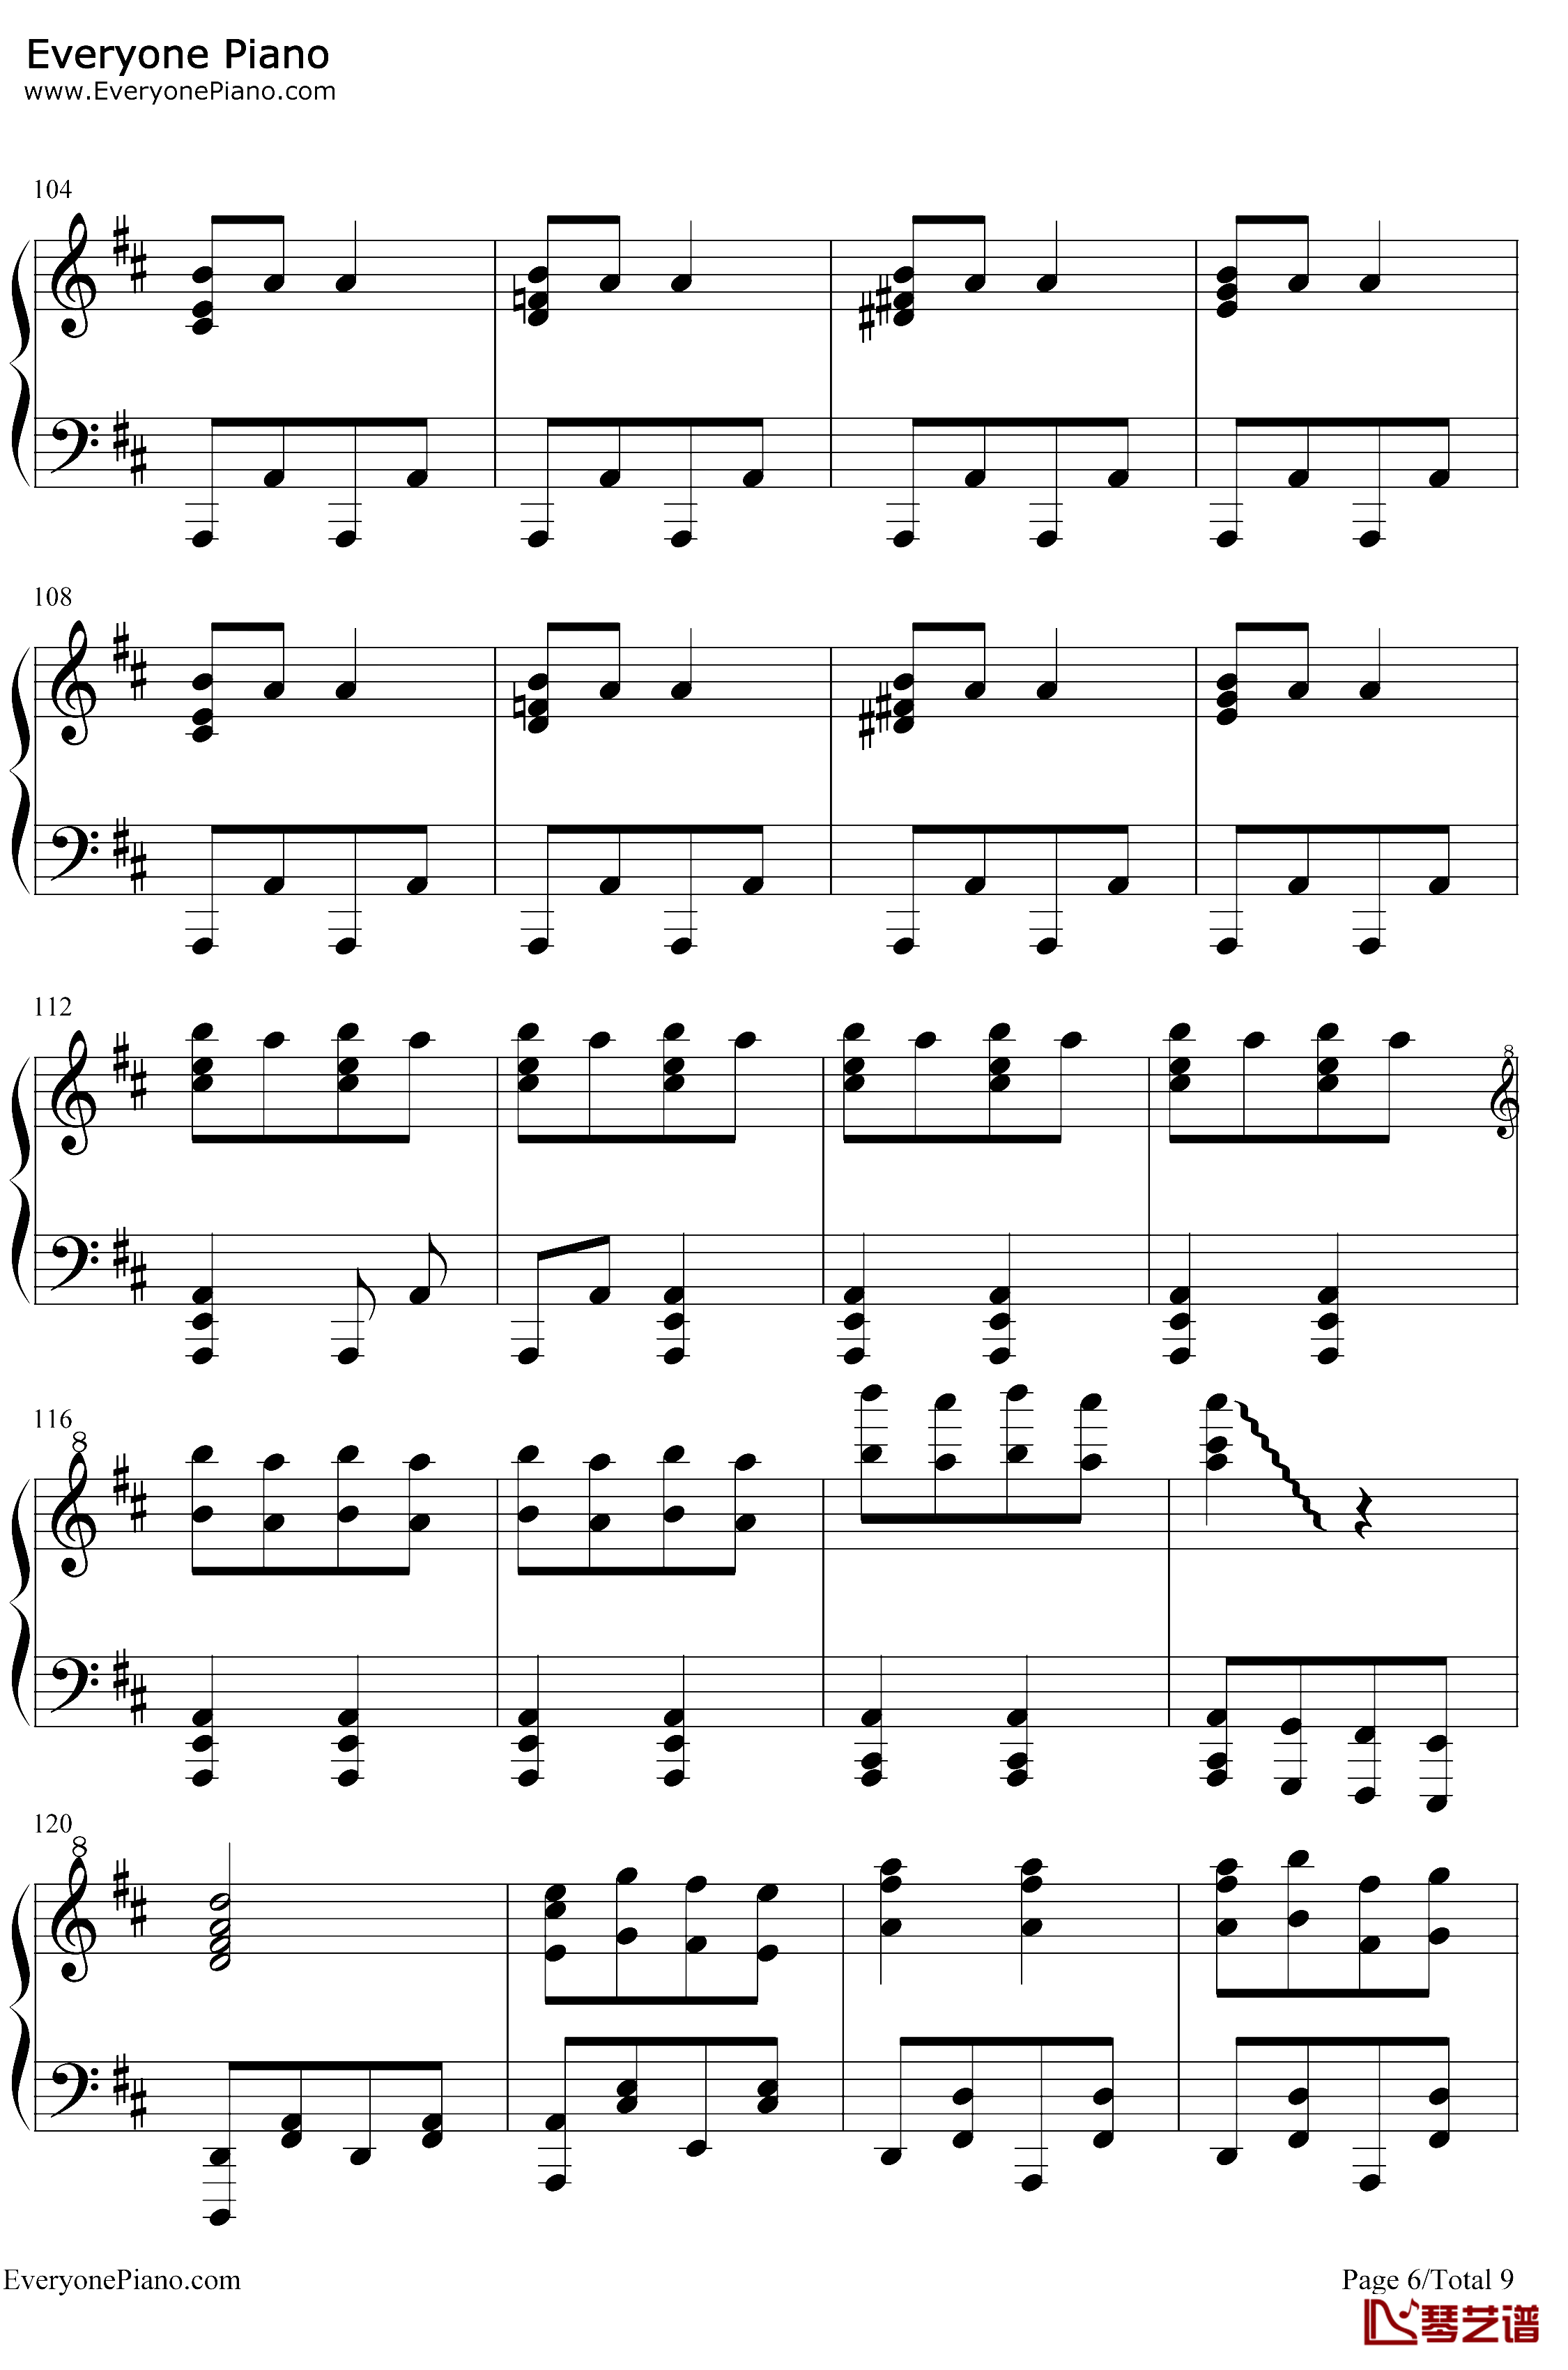 康康舞曲钢琴谱-雅克·奥芬巴赫-触手猴版-天堂与地狱序曲-地狱中的奥菲欧序曲6